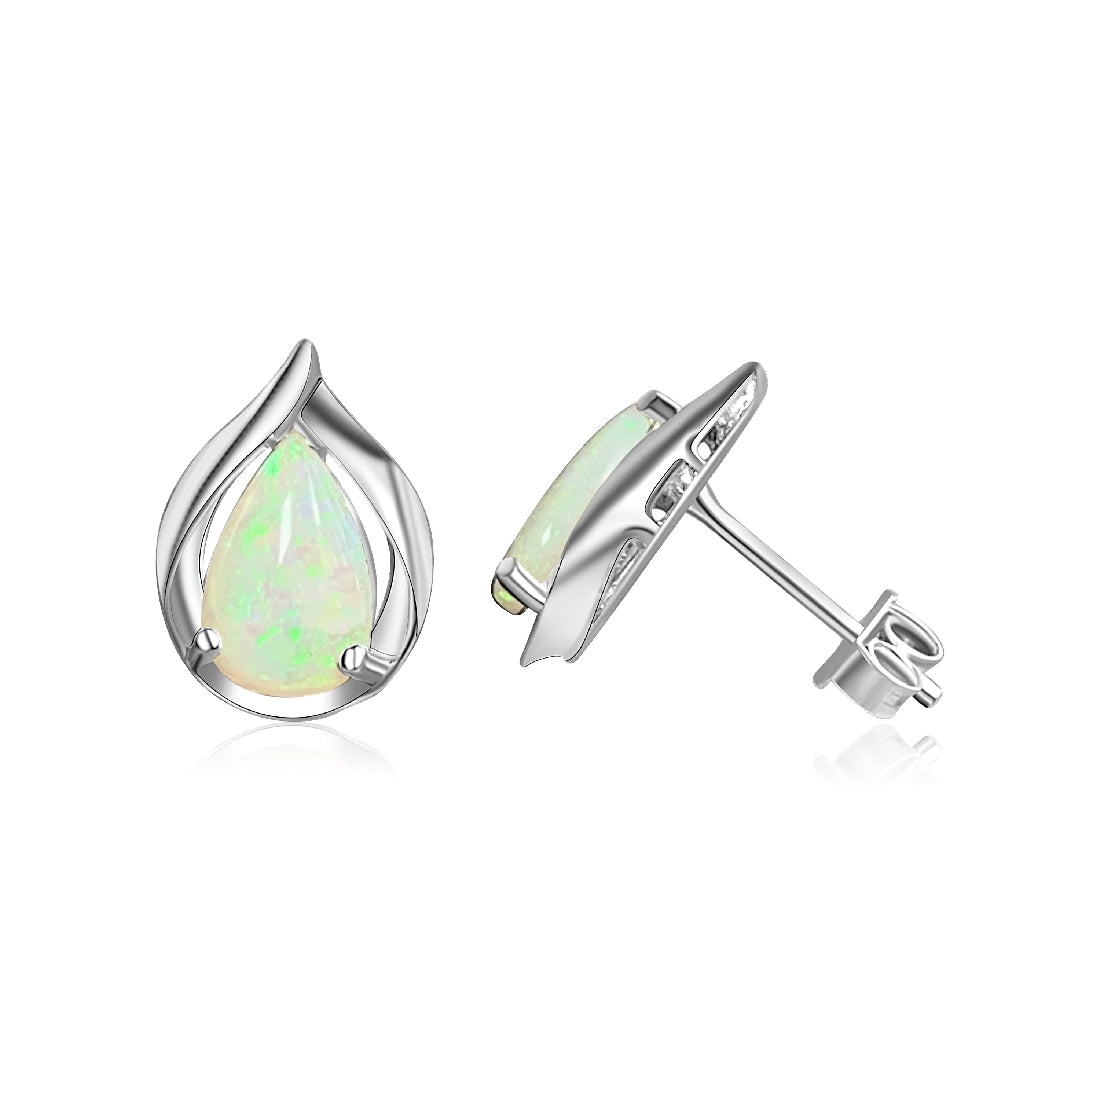 Sterling Silver Teardrop shape Opals 7x5mm - Masterpiece Jewellery Opal & Gems Sydney Australia | Online Shop